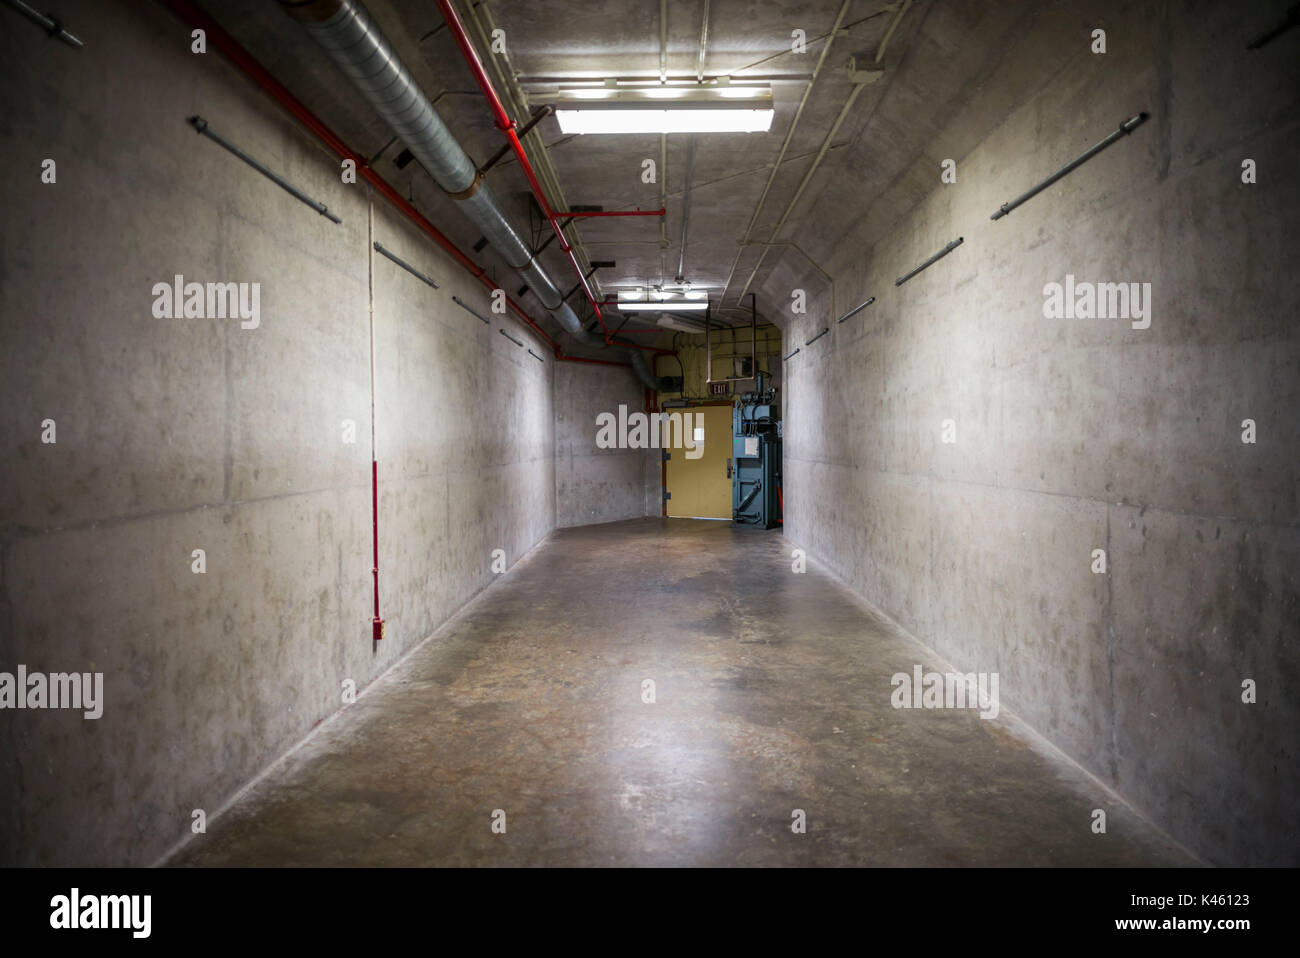 Kanada, Ontario, Karpfen, die diefenbunker, Kanadische Museum zum Kalten Krieg in unterirdischen Bunker, Bunker Durchgang Stockfoto